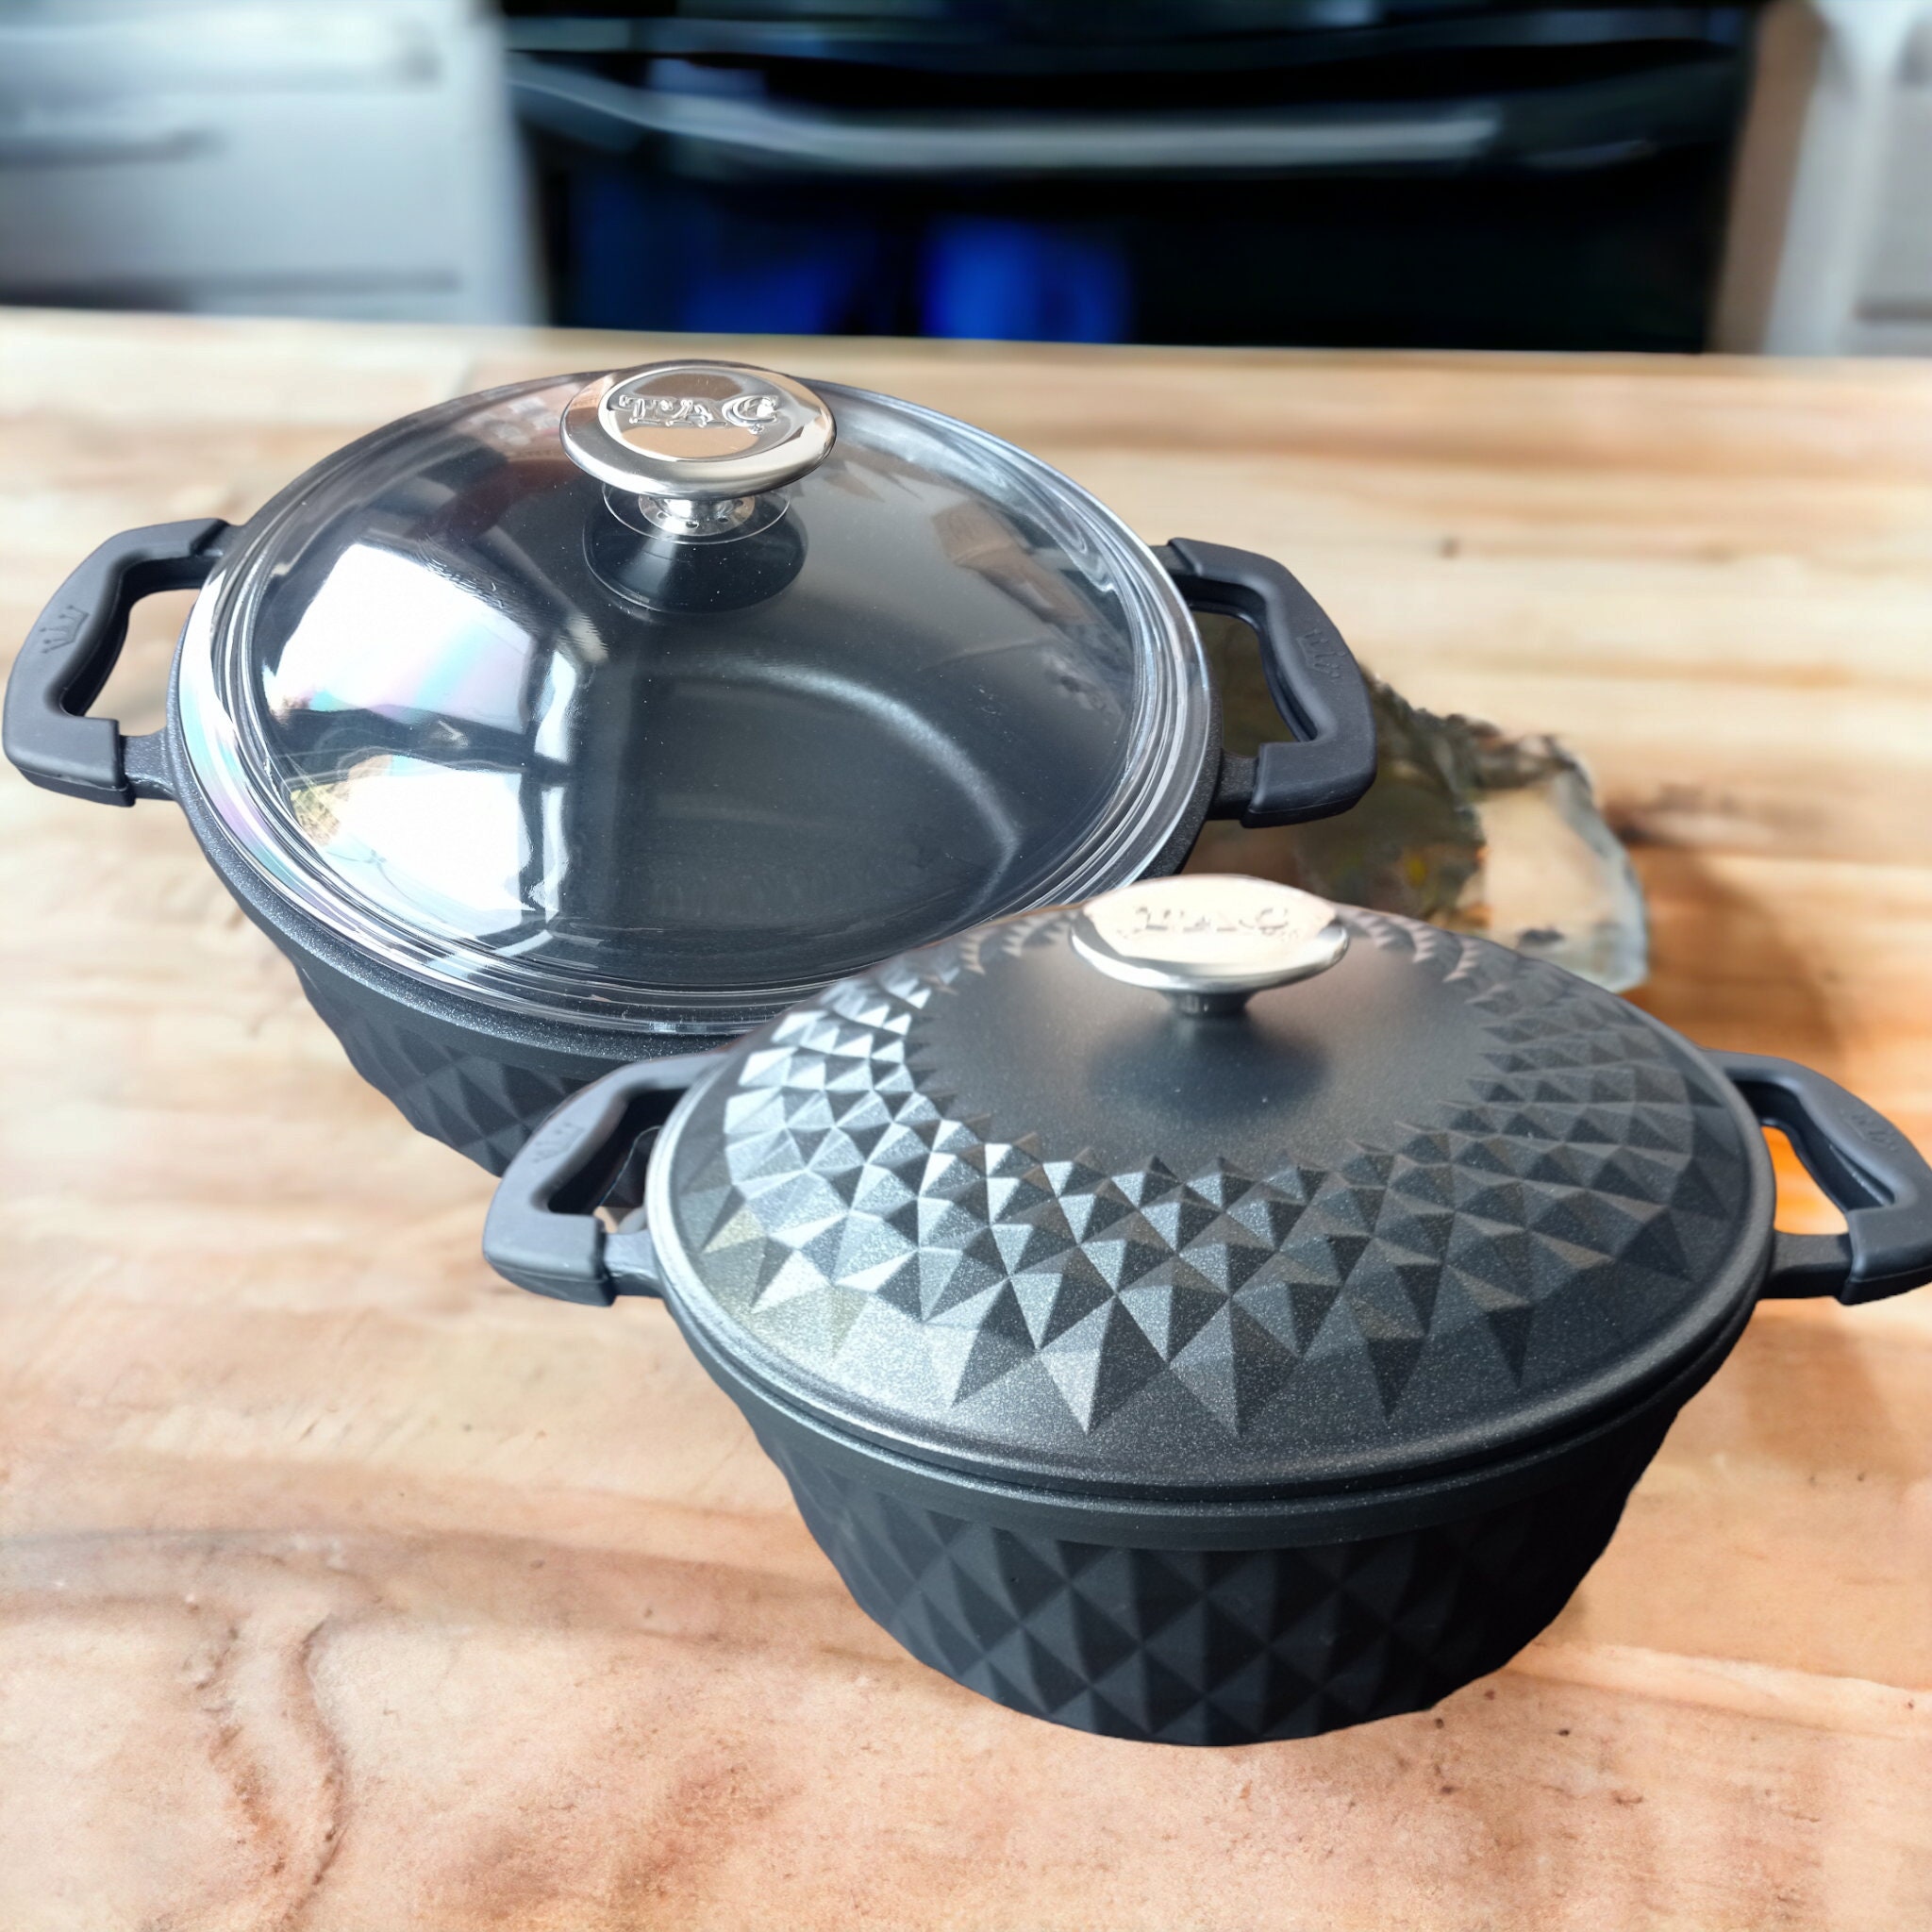 100% Jamaican 9 Dutch (Dutchie) Cooking Pot. Real Aluminum pot